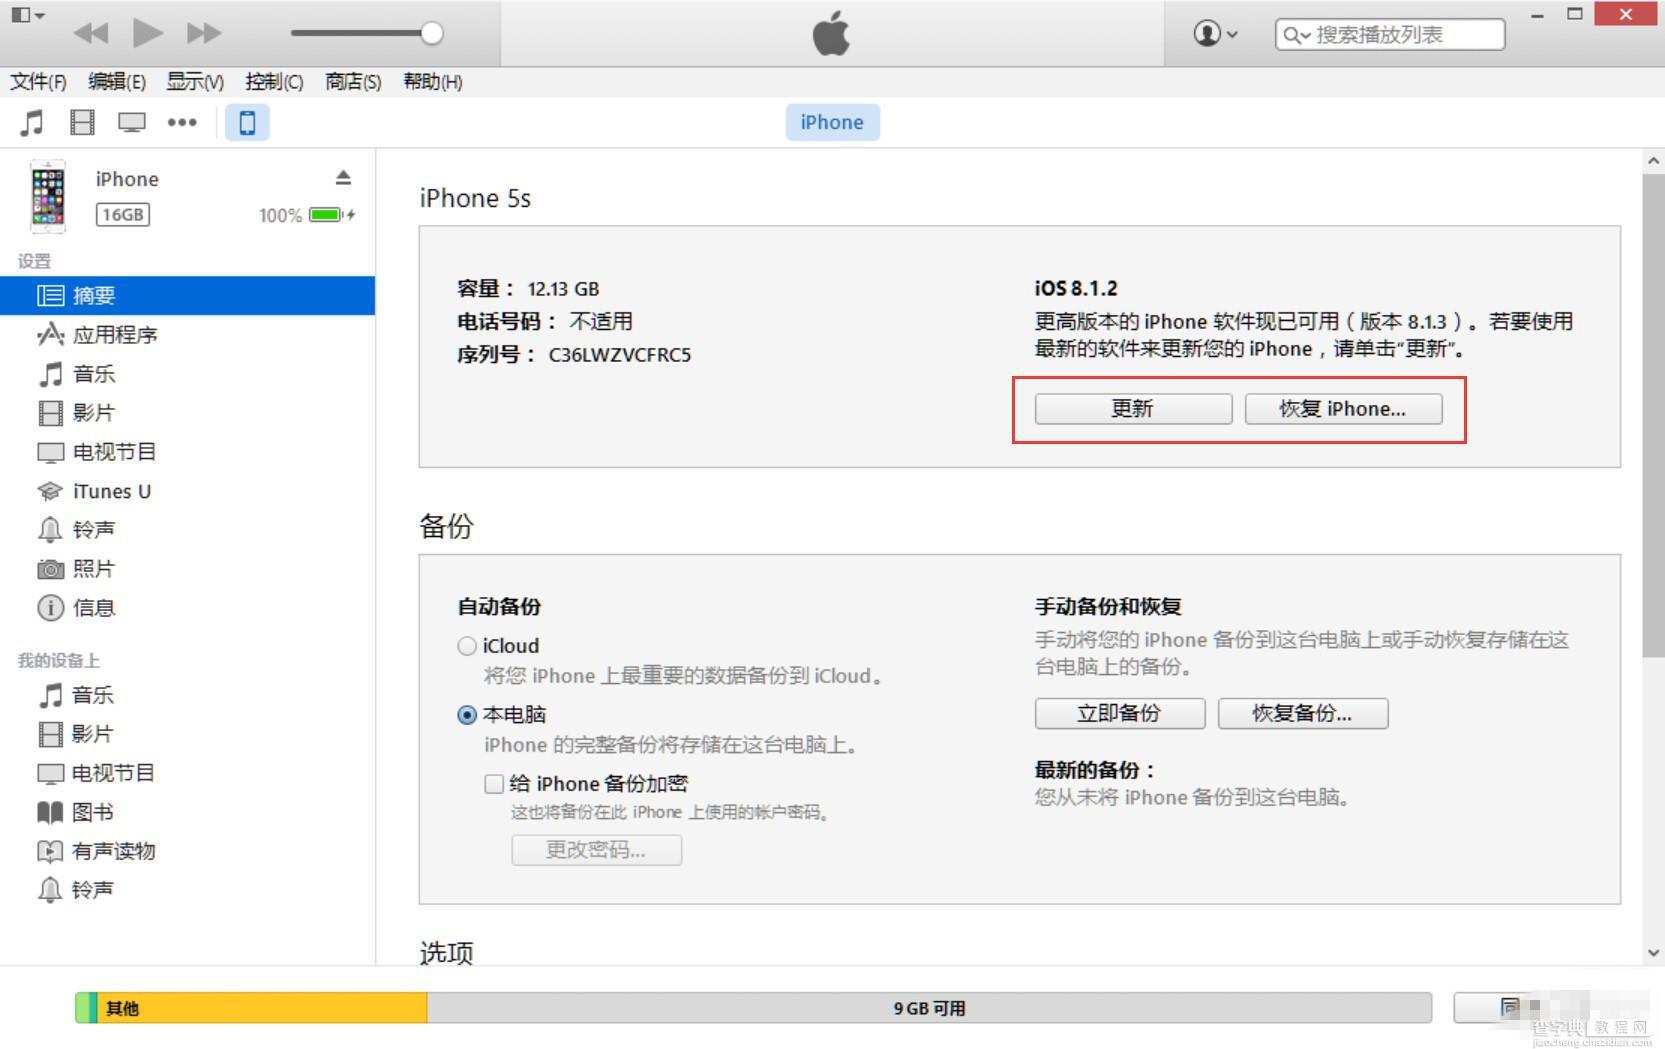 iOS8.4.1正式版固件下载教程 iOS8.4.1升级/恢复教程4